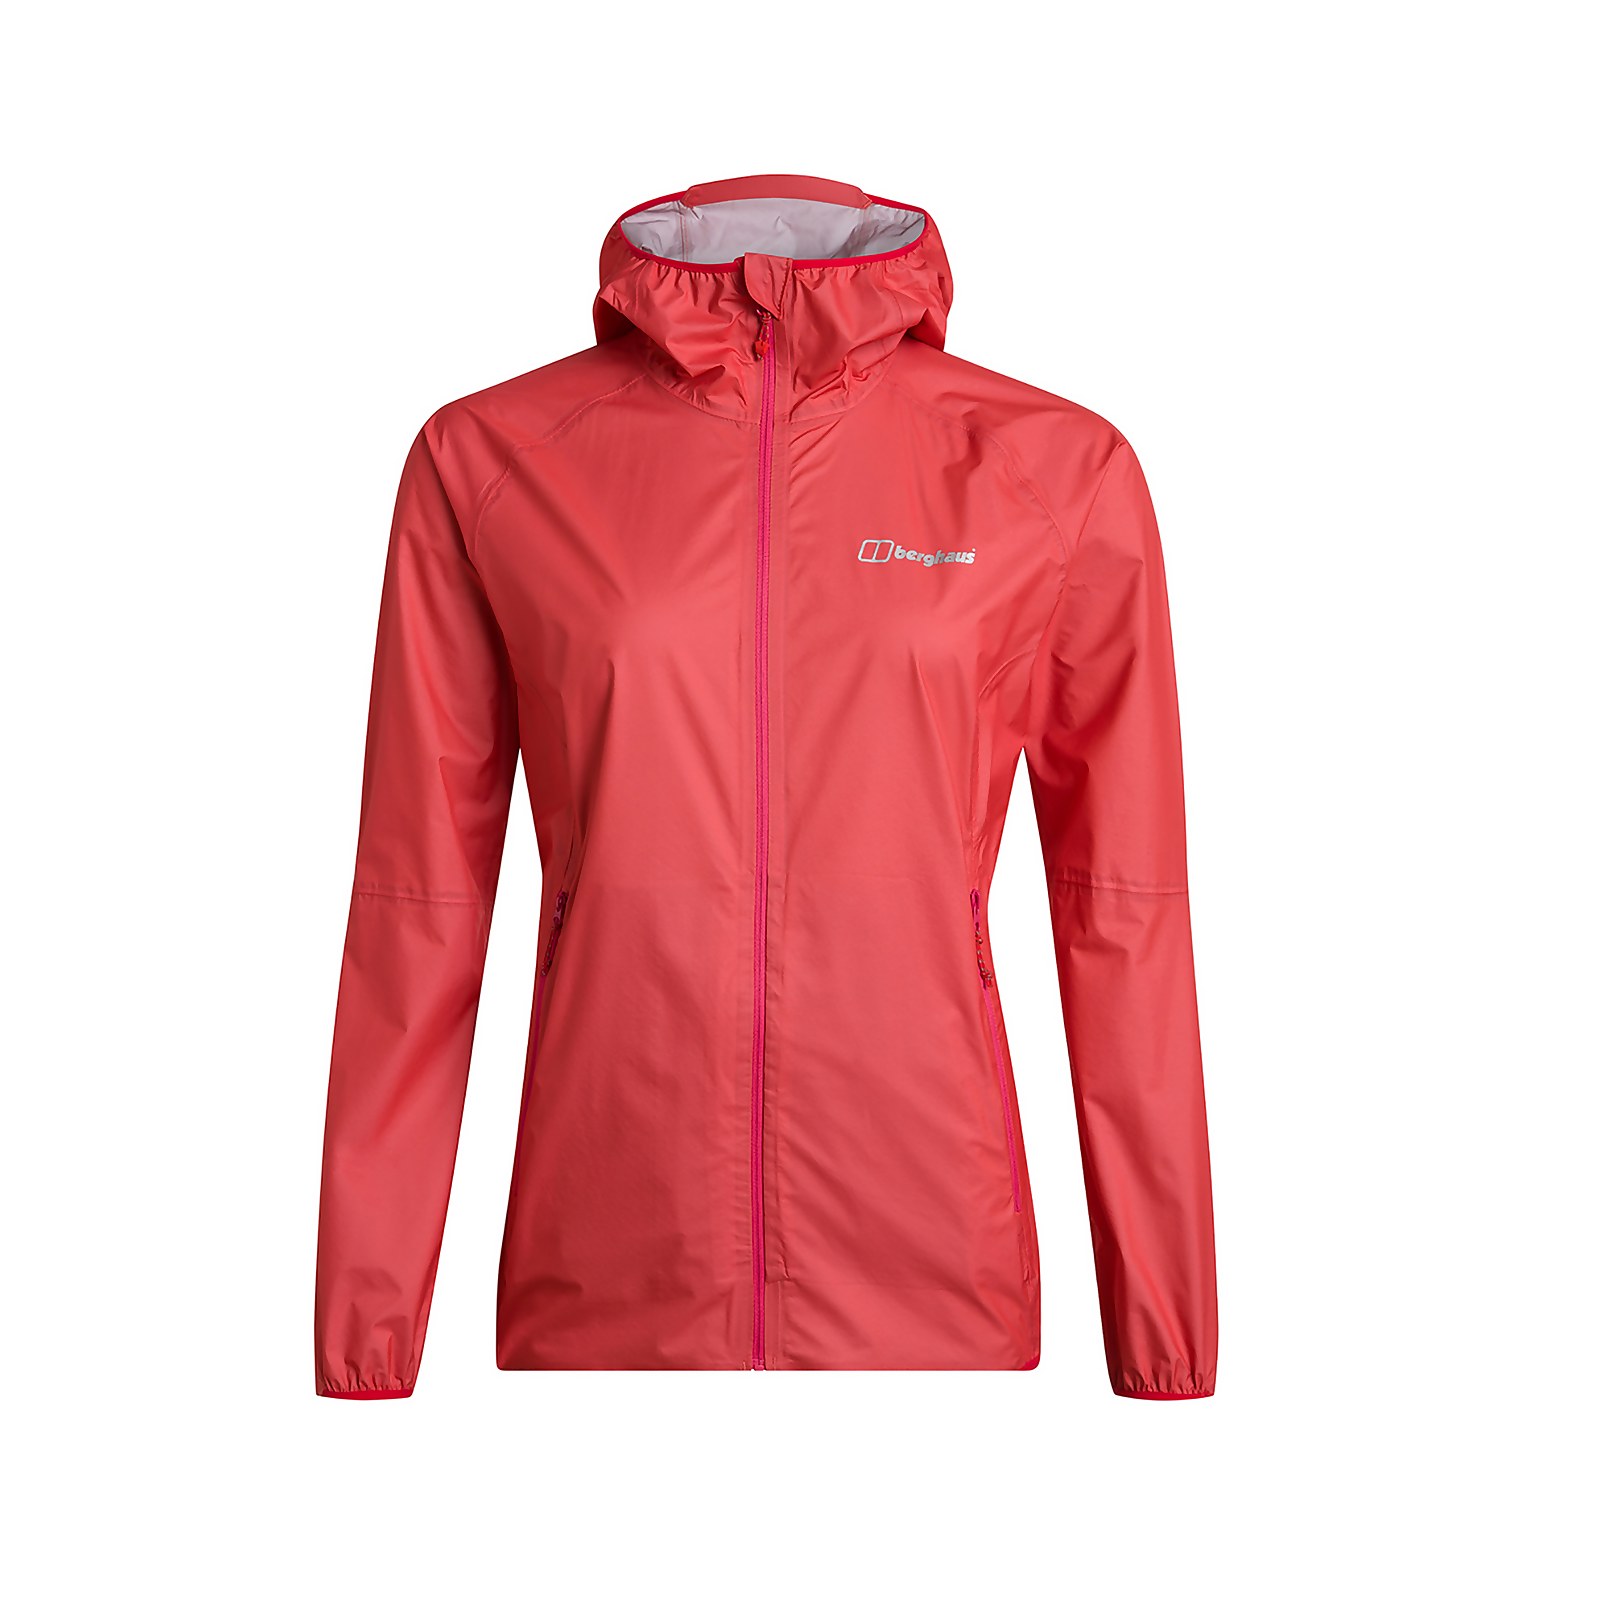 Berghaus Womens Hyper 140 Waterproof Jacket - Pink